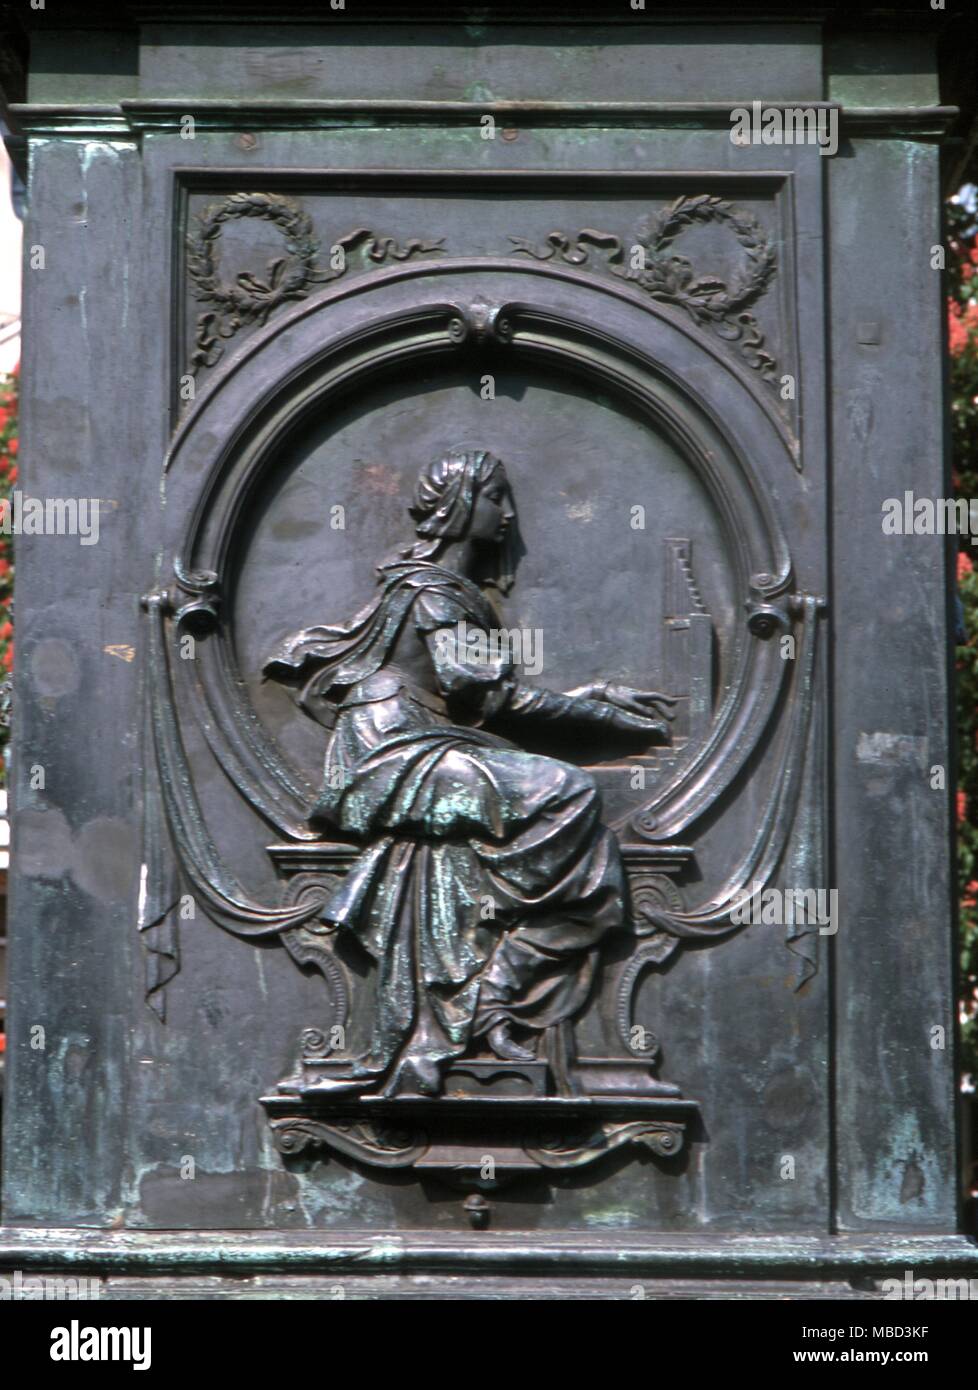 Simboli - Musica personificazione della musica, riproduzione di un pianoforte. Figura scolpita sullo zoccolo della statua di Beethoven, Bonn. Foto Stock